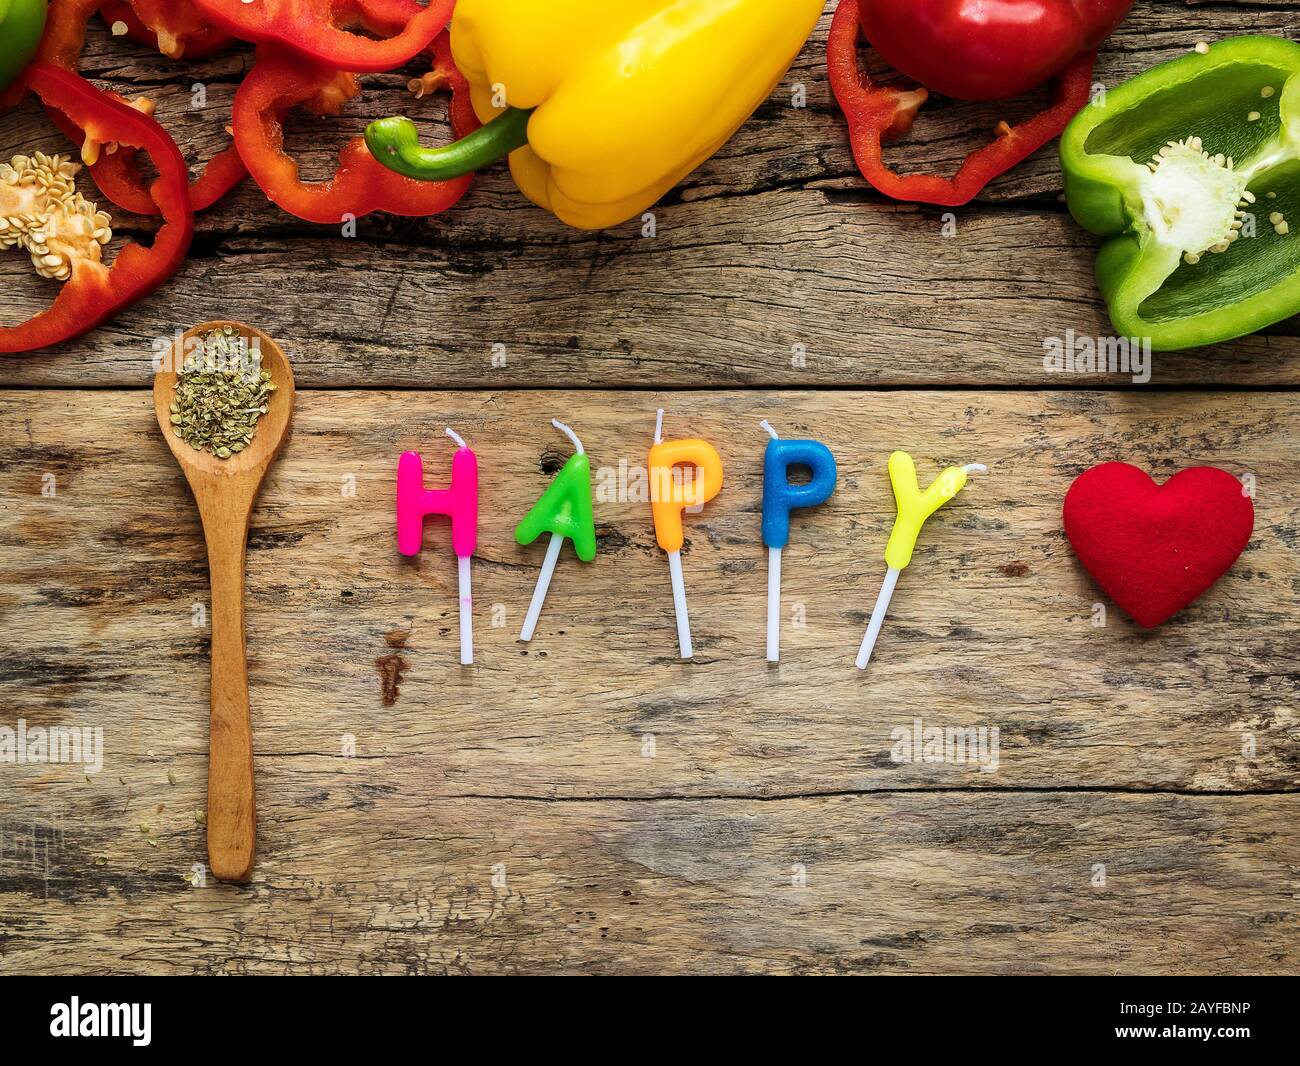 posate gli utensili da cucina con erbe, peperone colorato e la parola felice dalle candele su sfondo di legno. vista dall'alto con spazio per le copie. mangiate Foto Stock